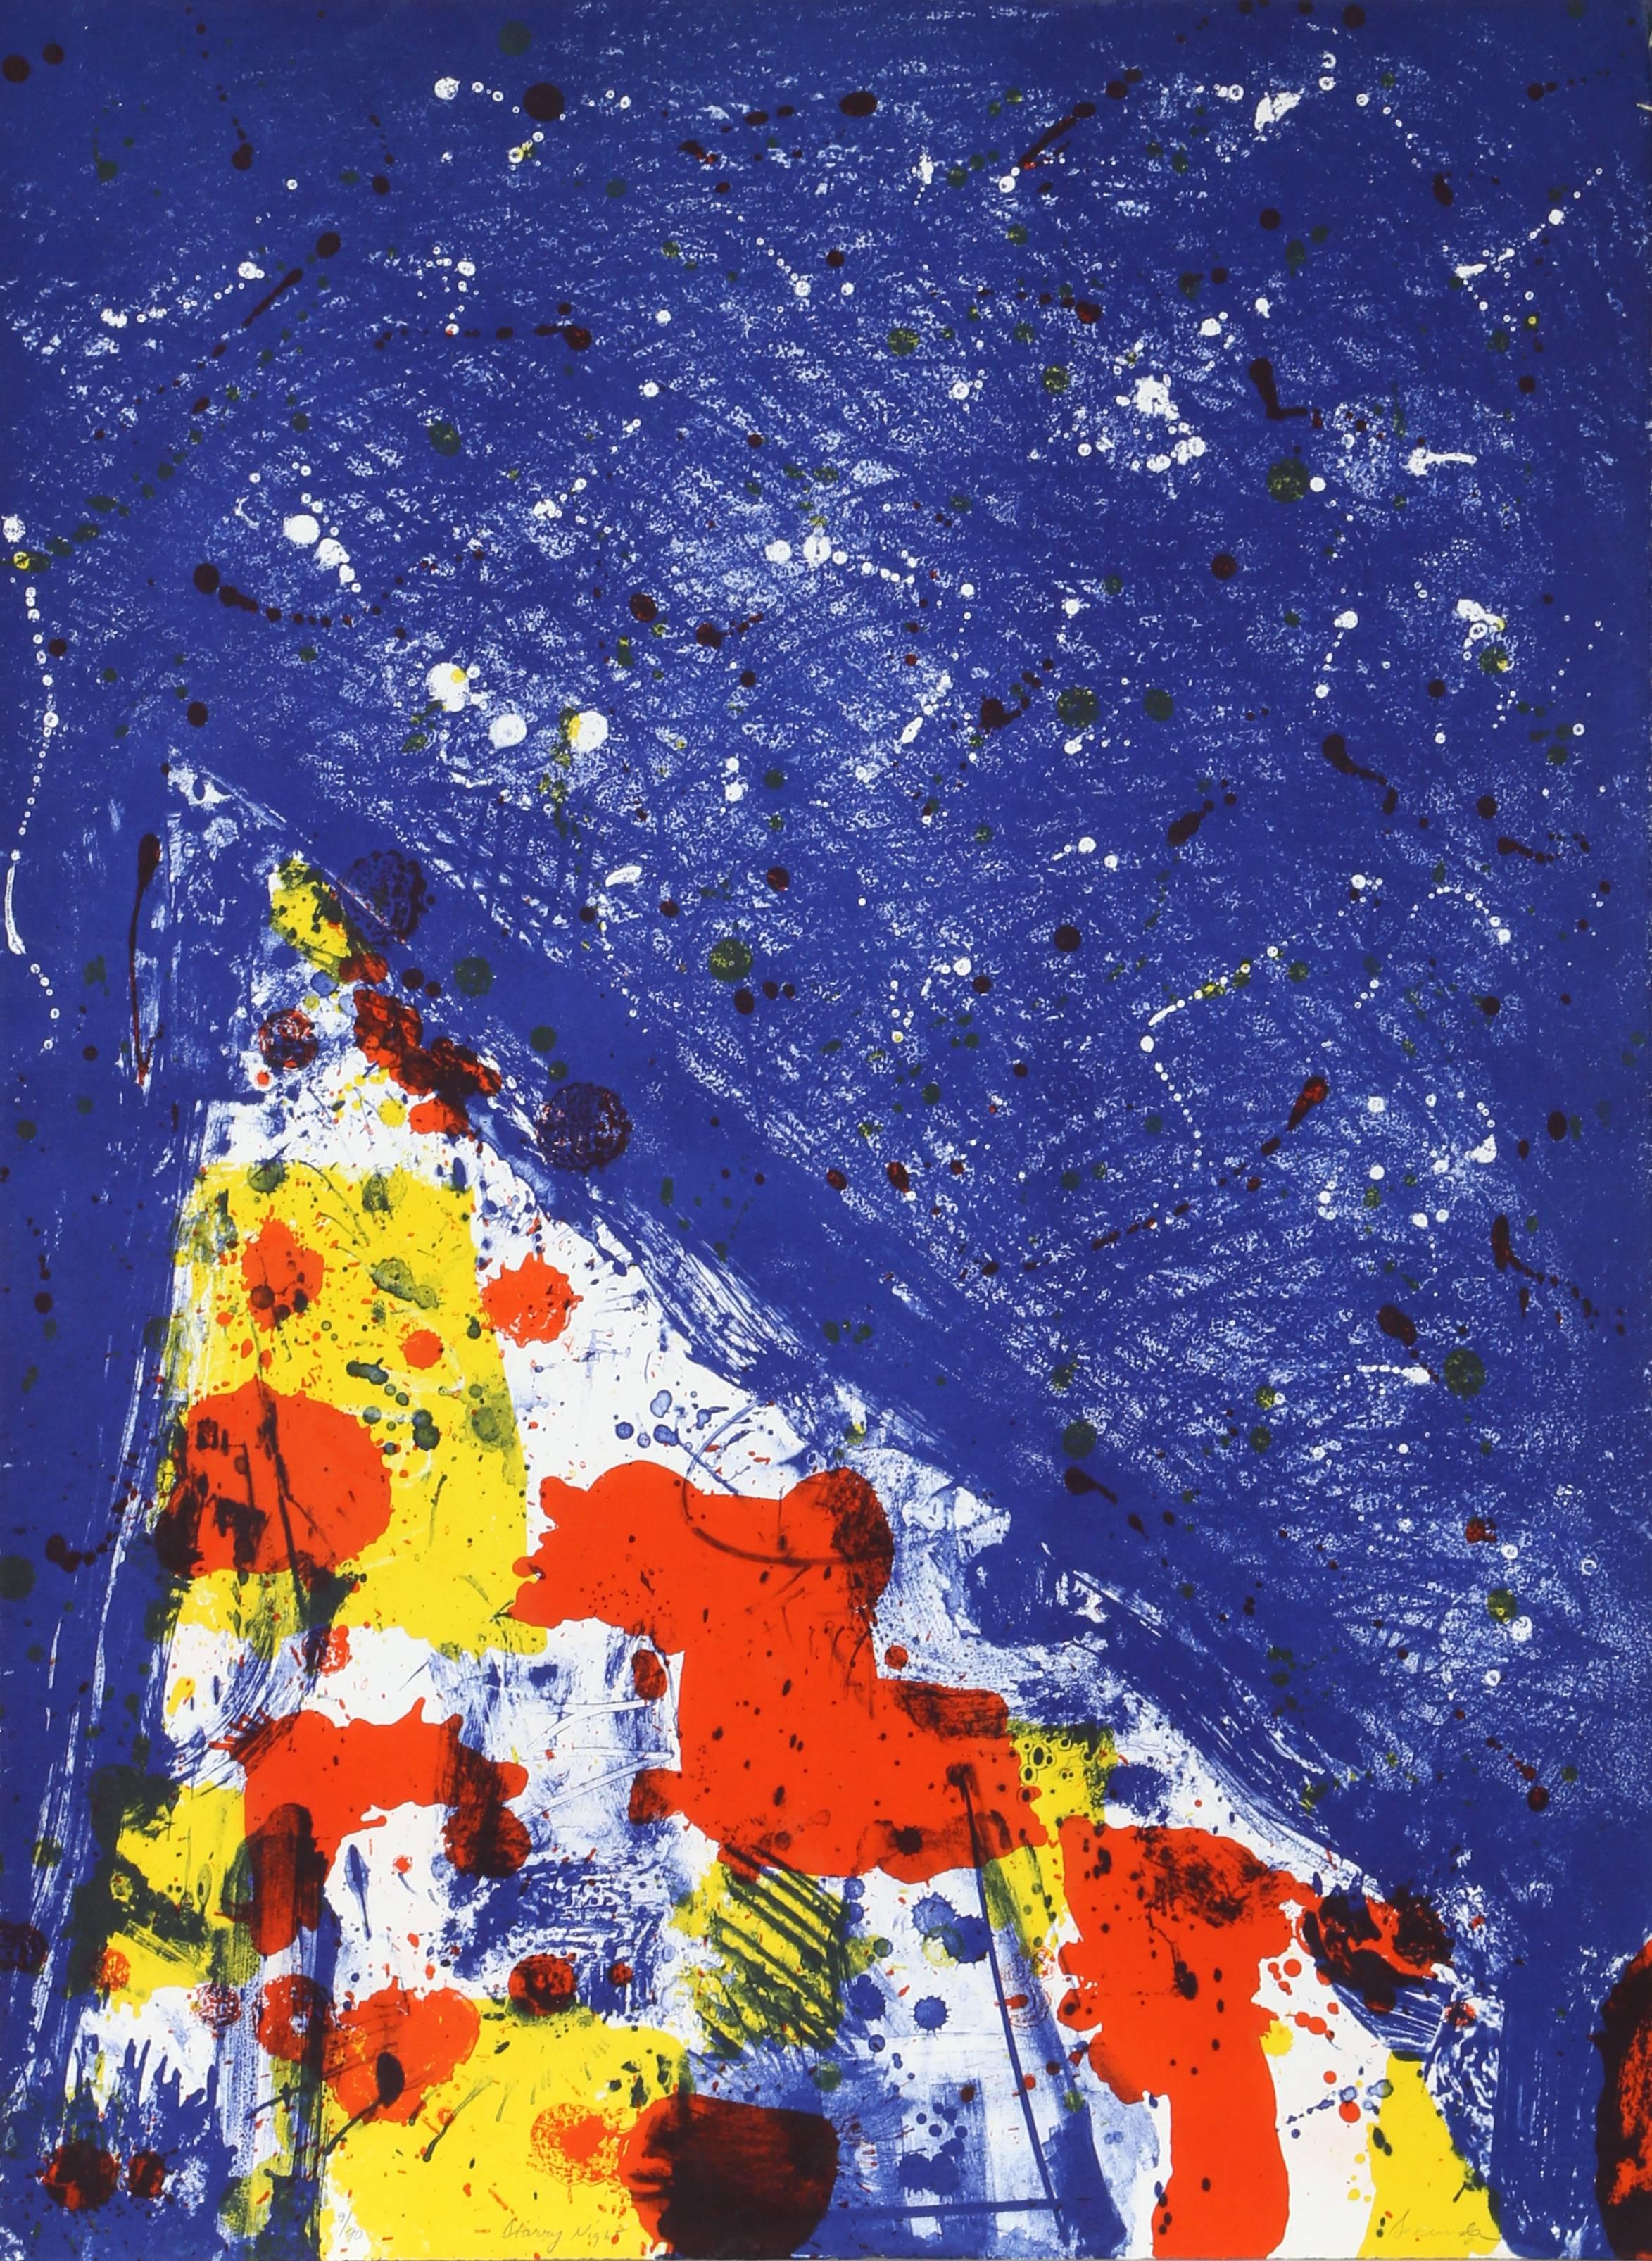 Künstler: Arthur Secunda
Titel: Sternenhafte Nacht
Jahr: ca. 1970
Medium: Steinlithographie, mit Bleistift signiert und nummeriert
Ausgabe: 9/90
Papierformat: 30  x 22 in. (76.2  x 55,88 cm)